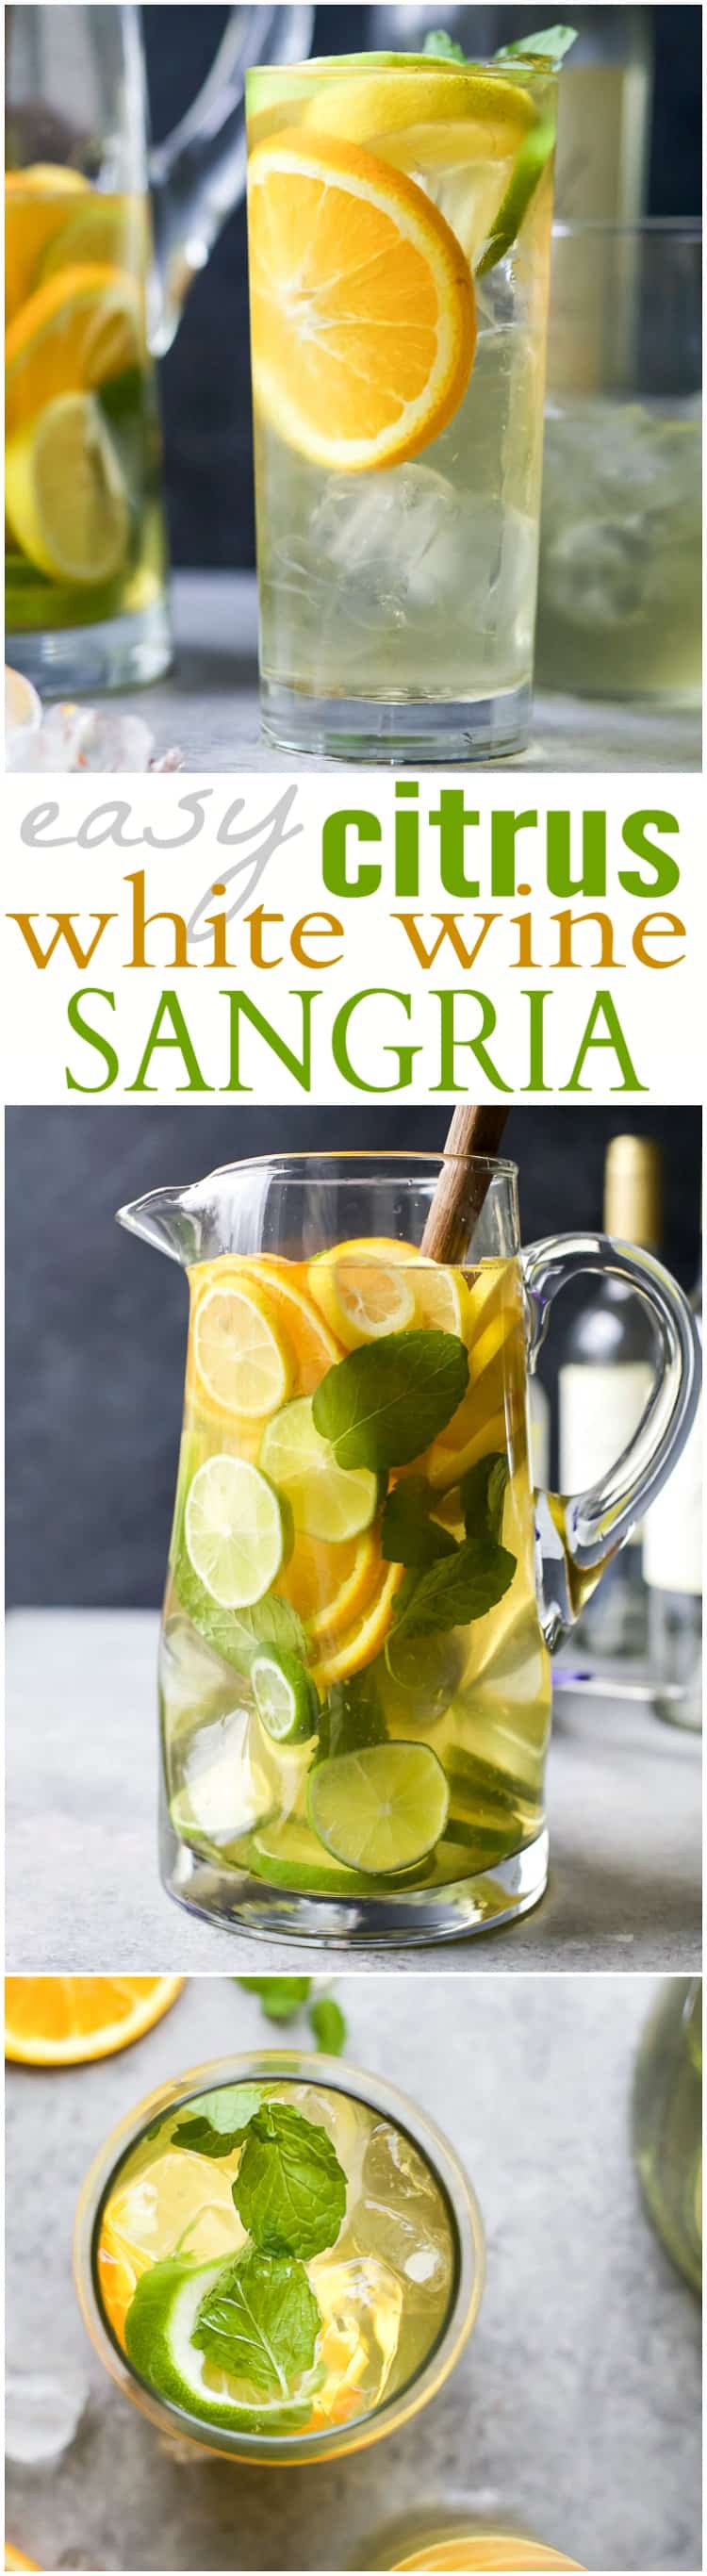 Recipe collage for Easy Citrus White Wine Sangria